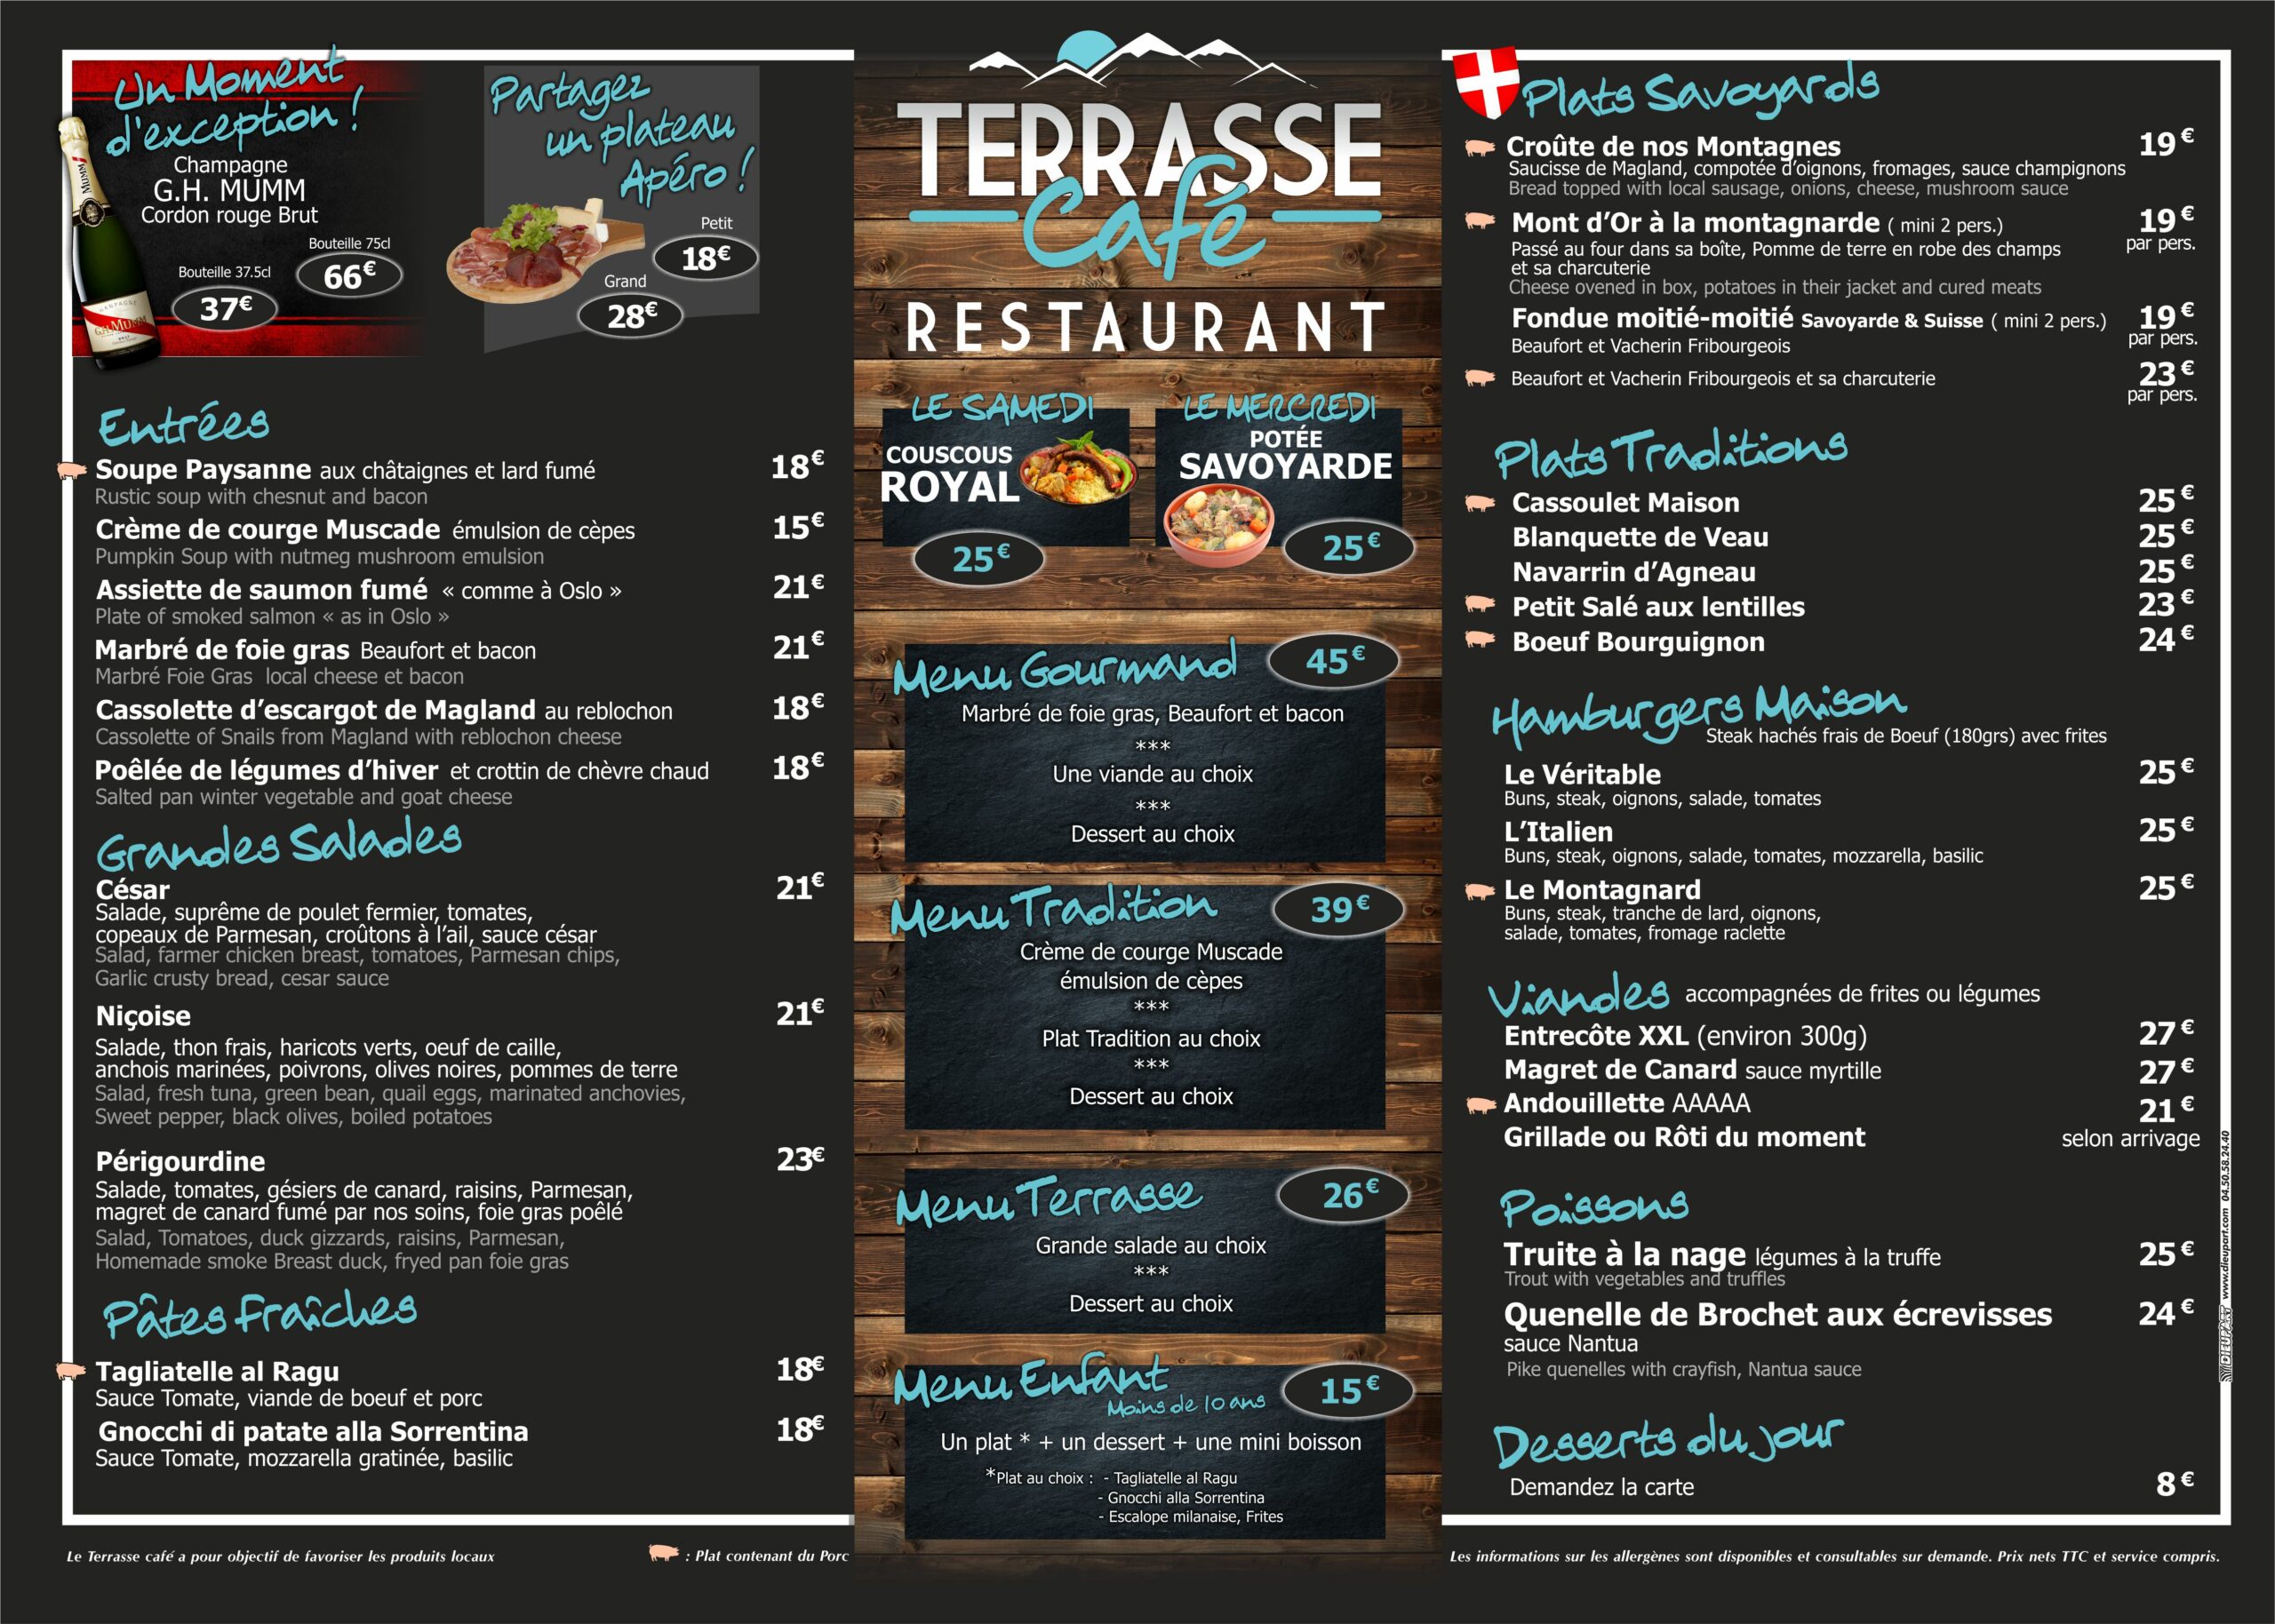 Terrasse Café-Set de Table